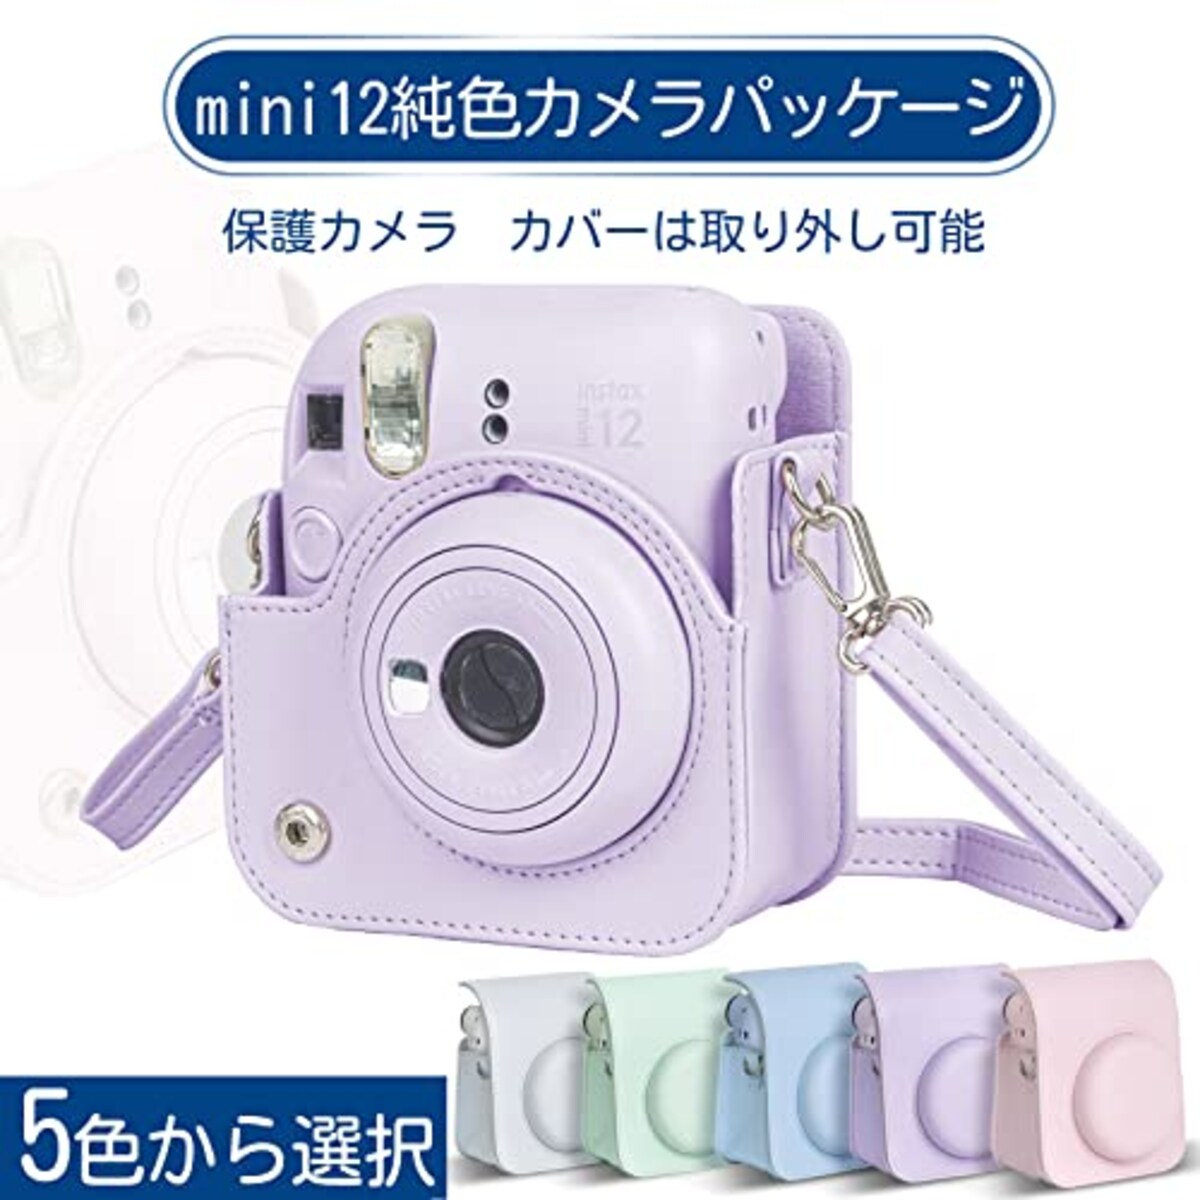  チェキケース instax mini 12用 カメラケース mini12 チェキ カバー Fujifilm チェキ ケース 新モデル 全面保護 傷つけ防止 携帯便利 ショルダーストラップ付き PUレザー (パープル)画像4 